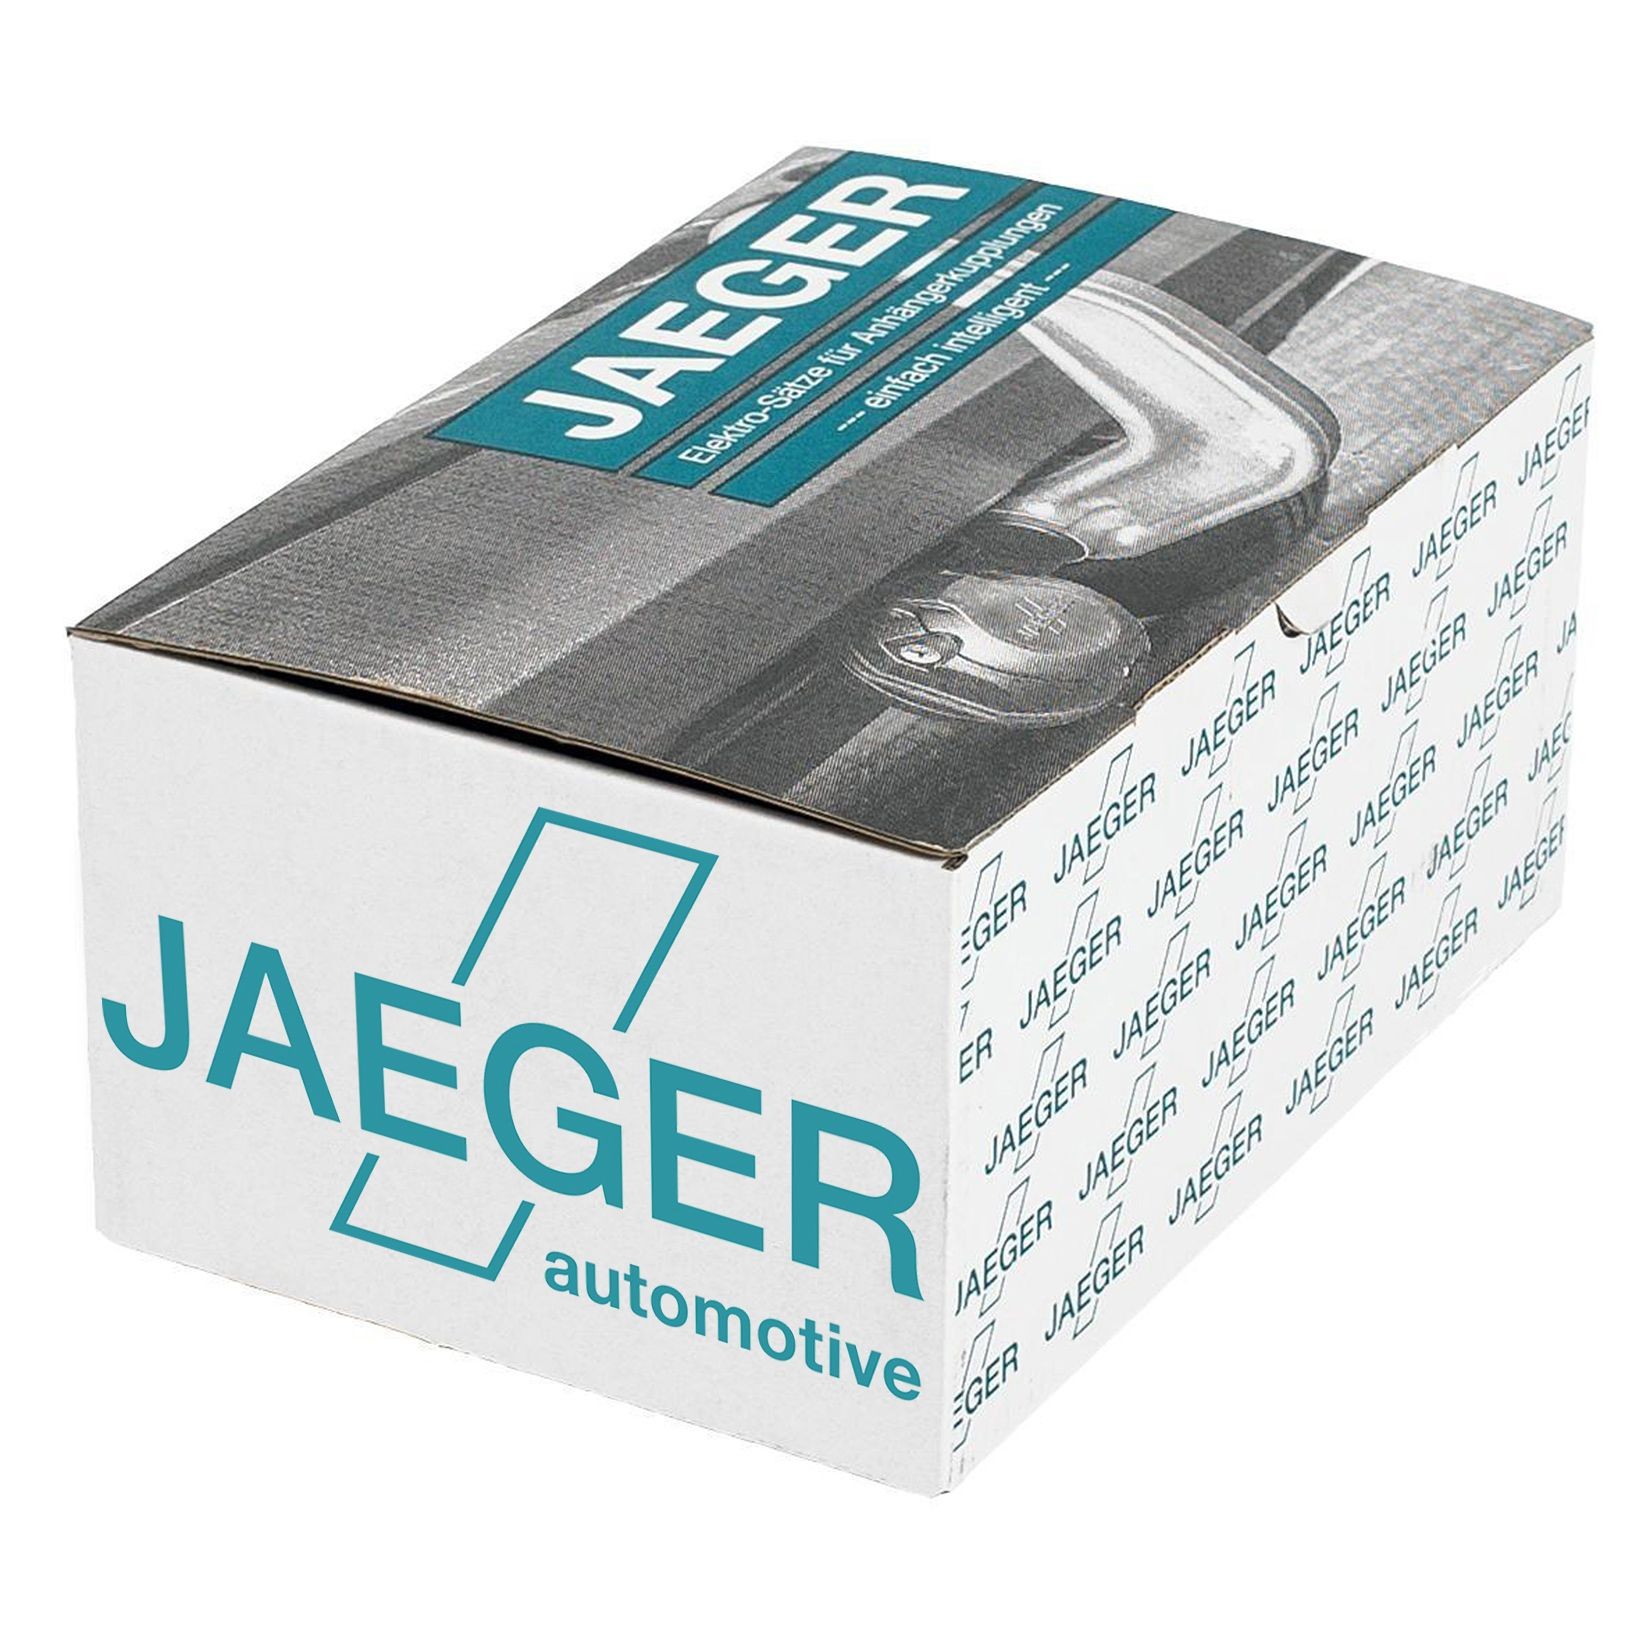 Jaeger automotive Elektrosatz-0